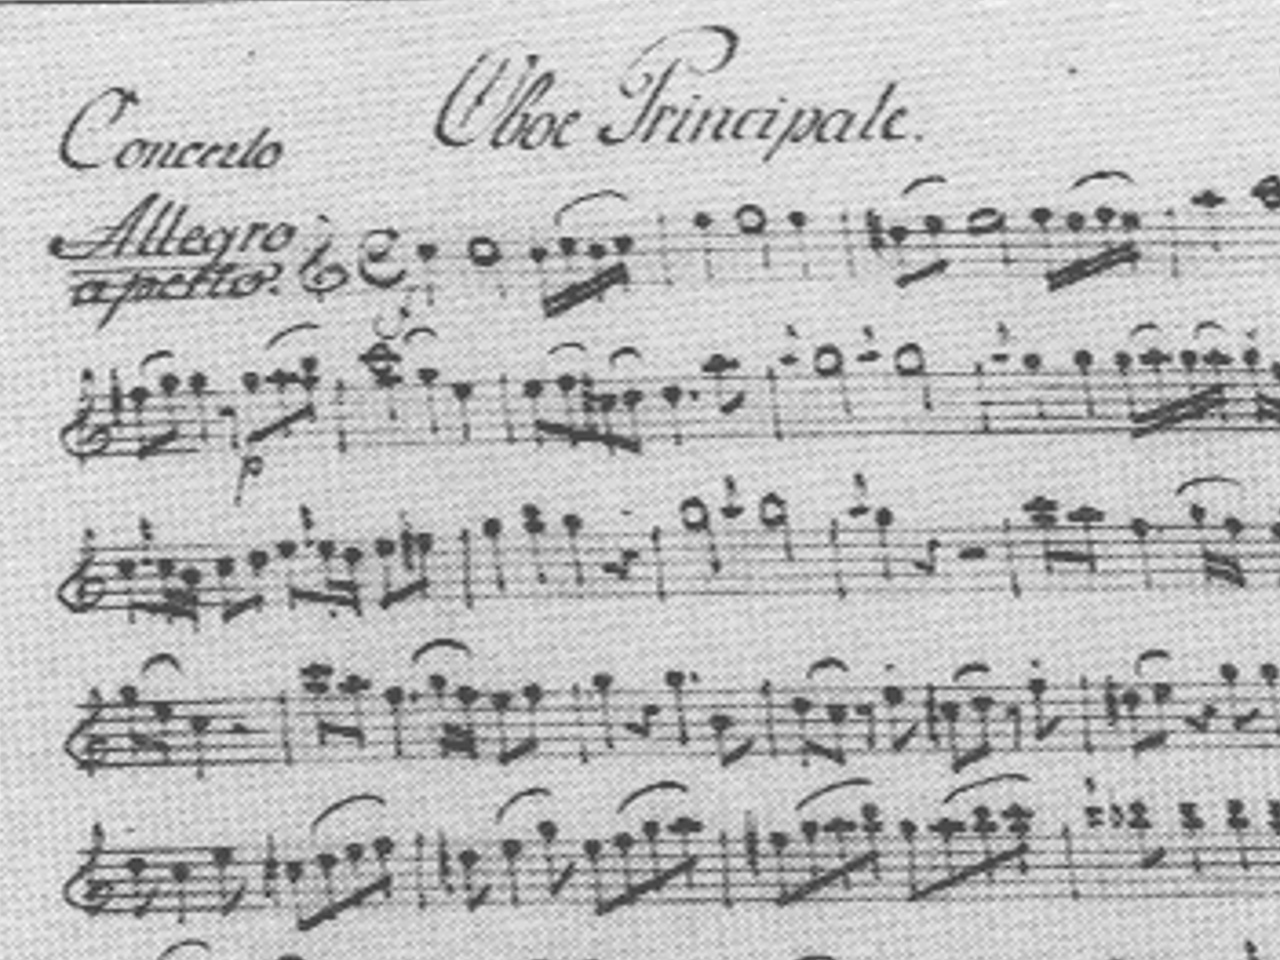 Partition d'un concerto pour hautbois de Mozart, mouvement au tempo Allegro Aperto. Edition de 1920